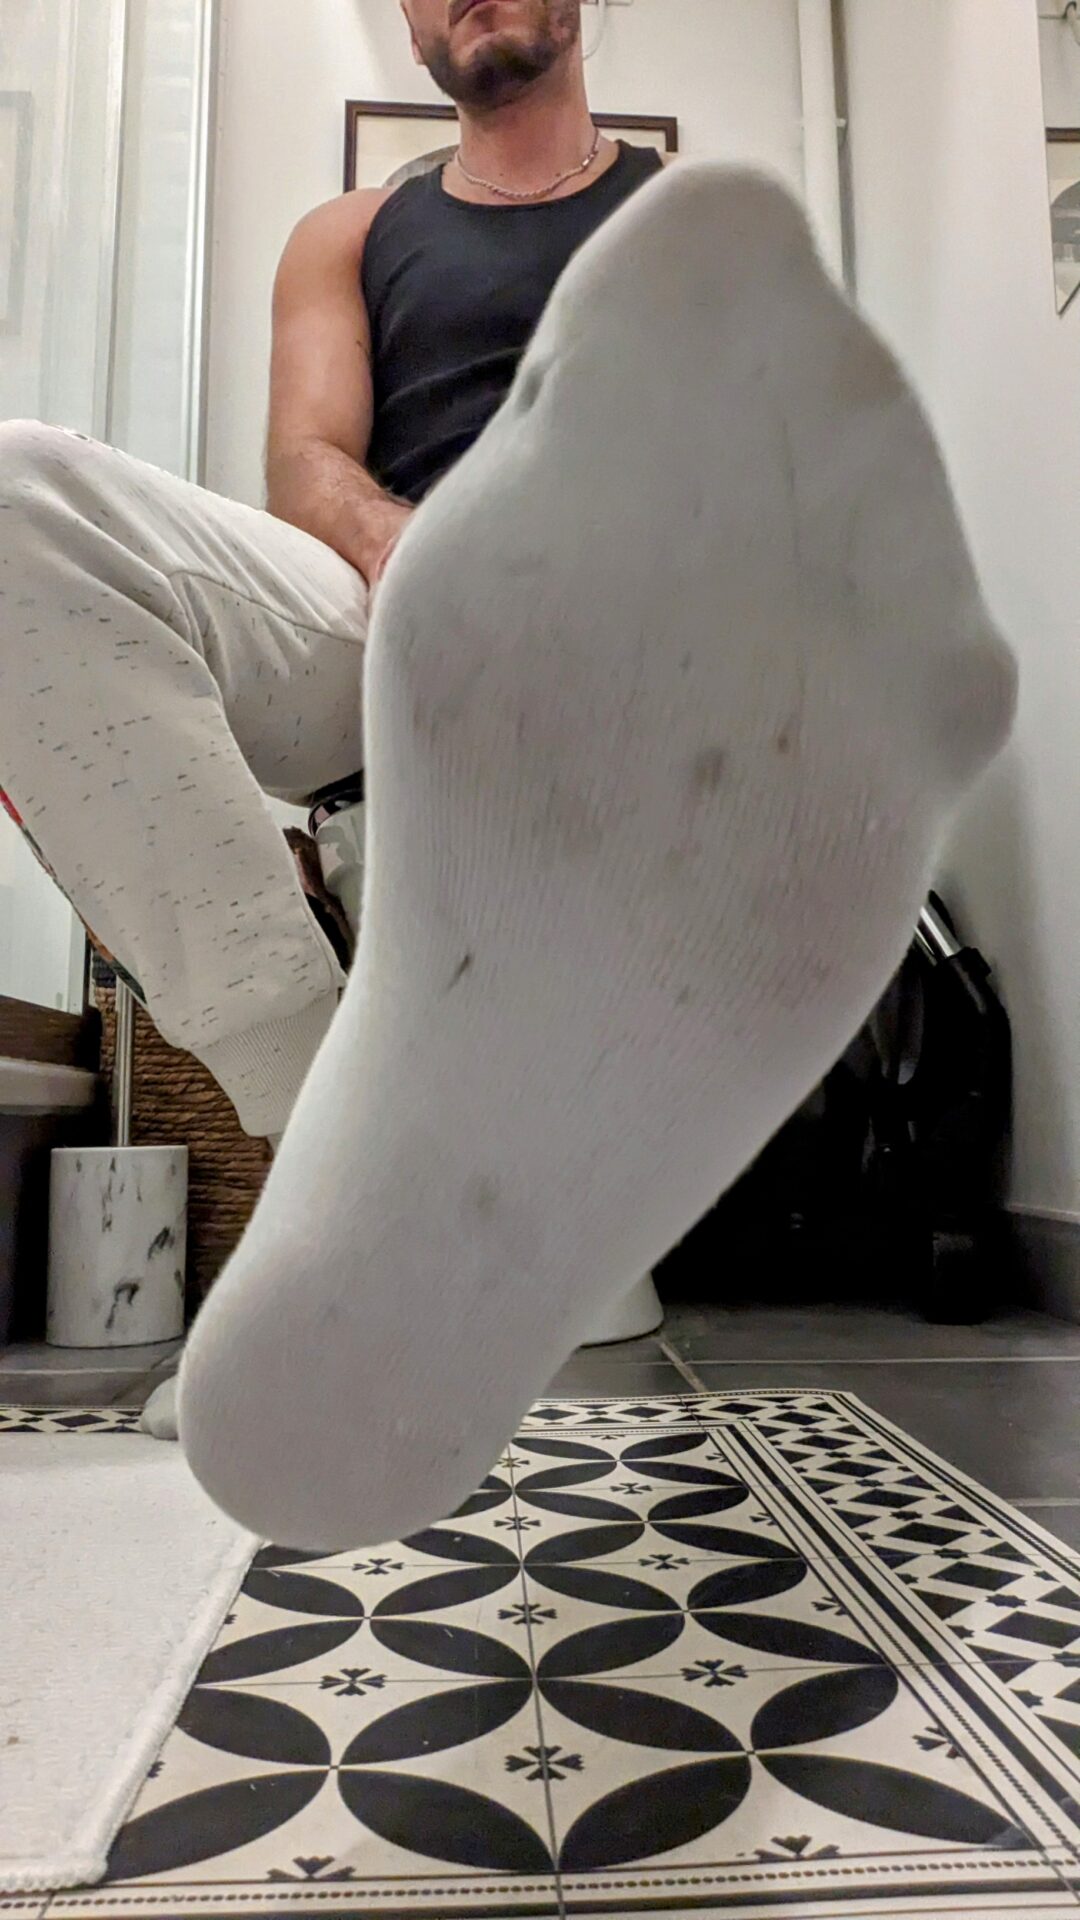 Paire de chaussettes blanches Umbro 43/46 » Kiffeurs